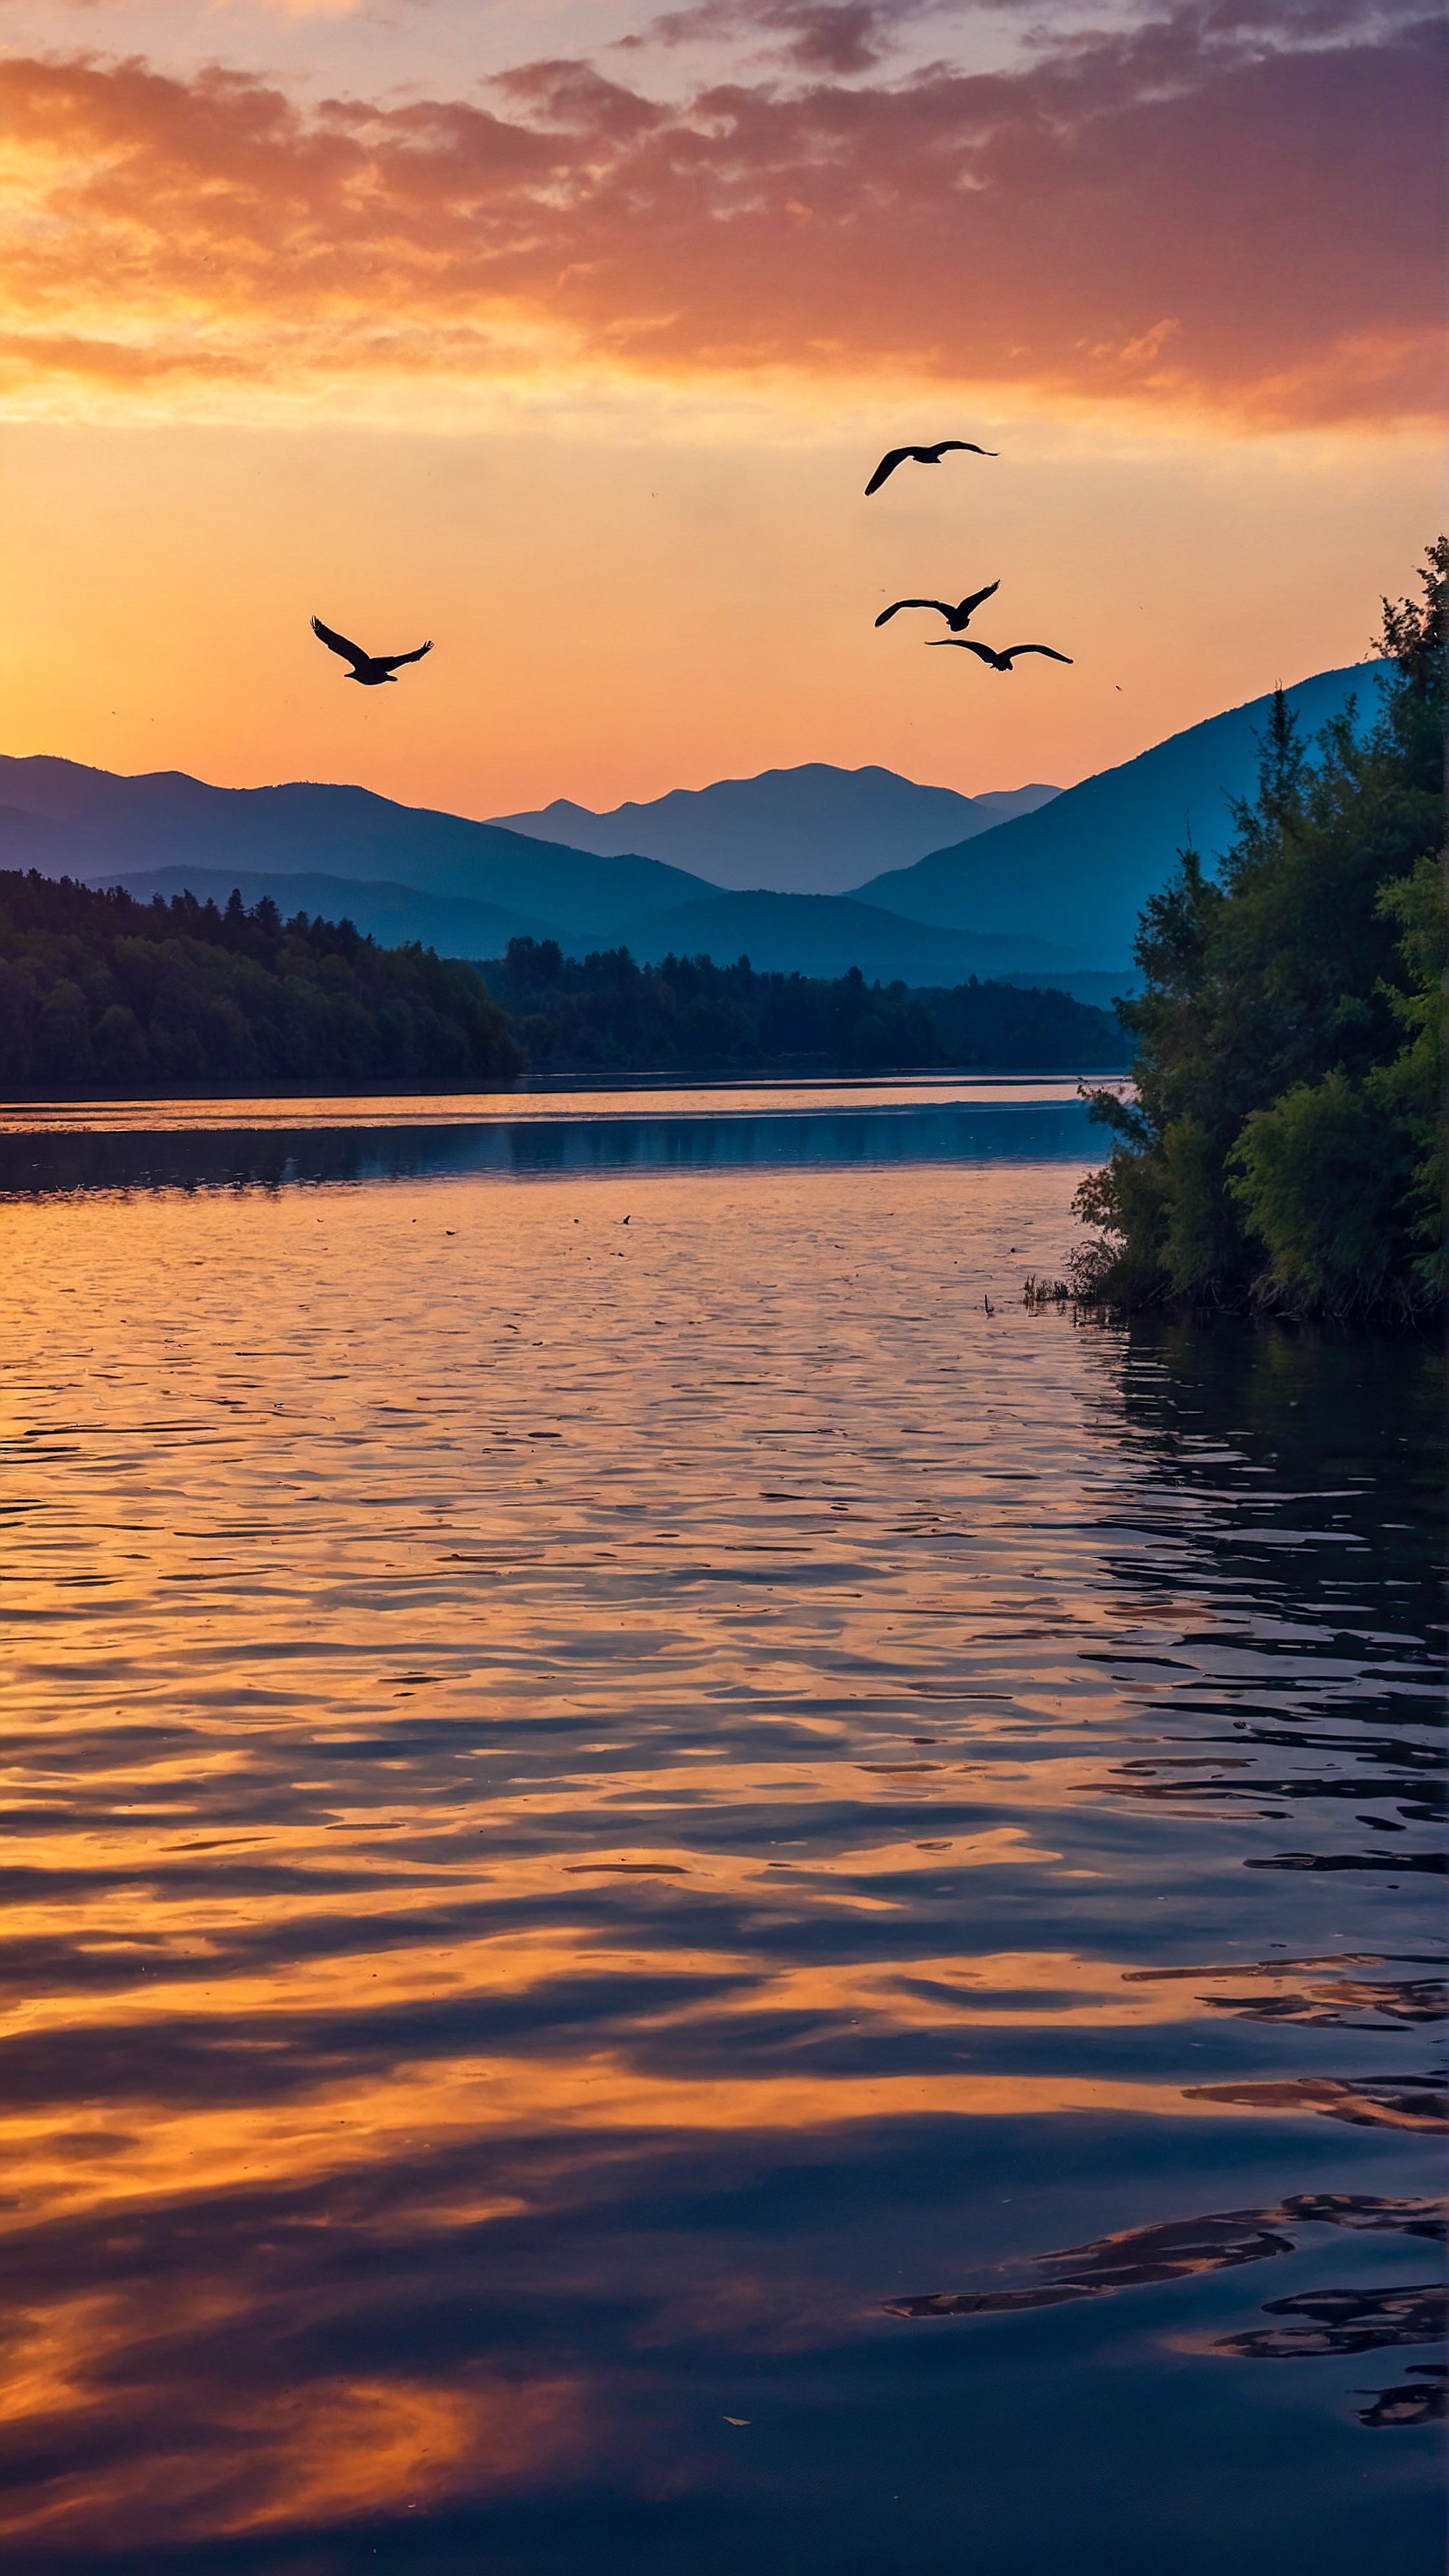 Goûtez à la sérénité avec nos meilleurs fonds d'écran pour iPhone, dépeignant une scène de coucher de soleil tranquille et pittoresque avec des arbres en silhouette, un lac calme, des montagnes lointaines, et un ciel vibrant rempli d'oiseaux volants.